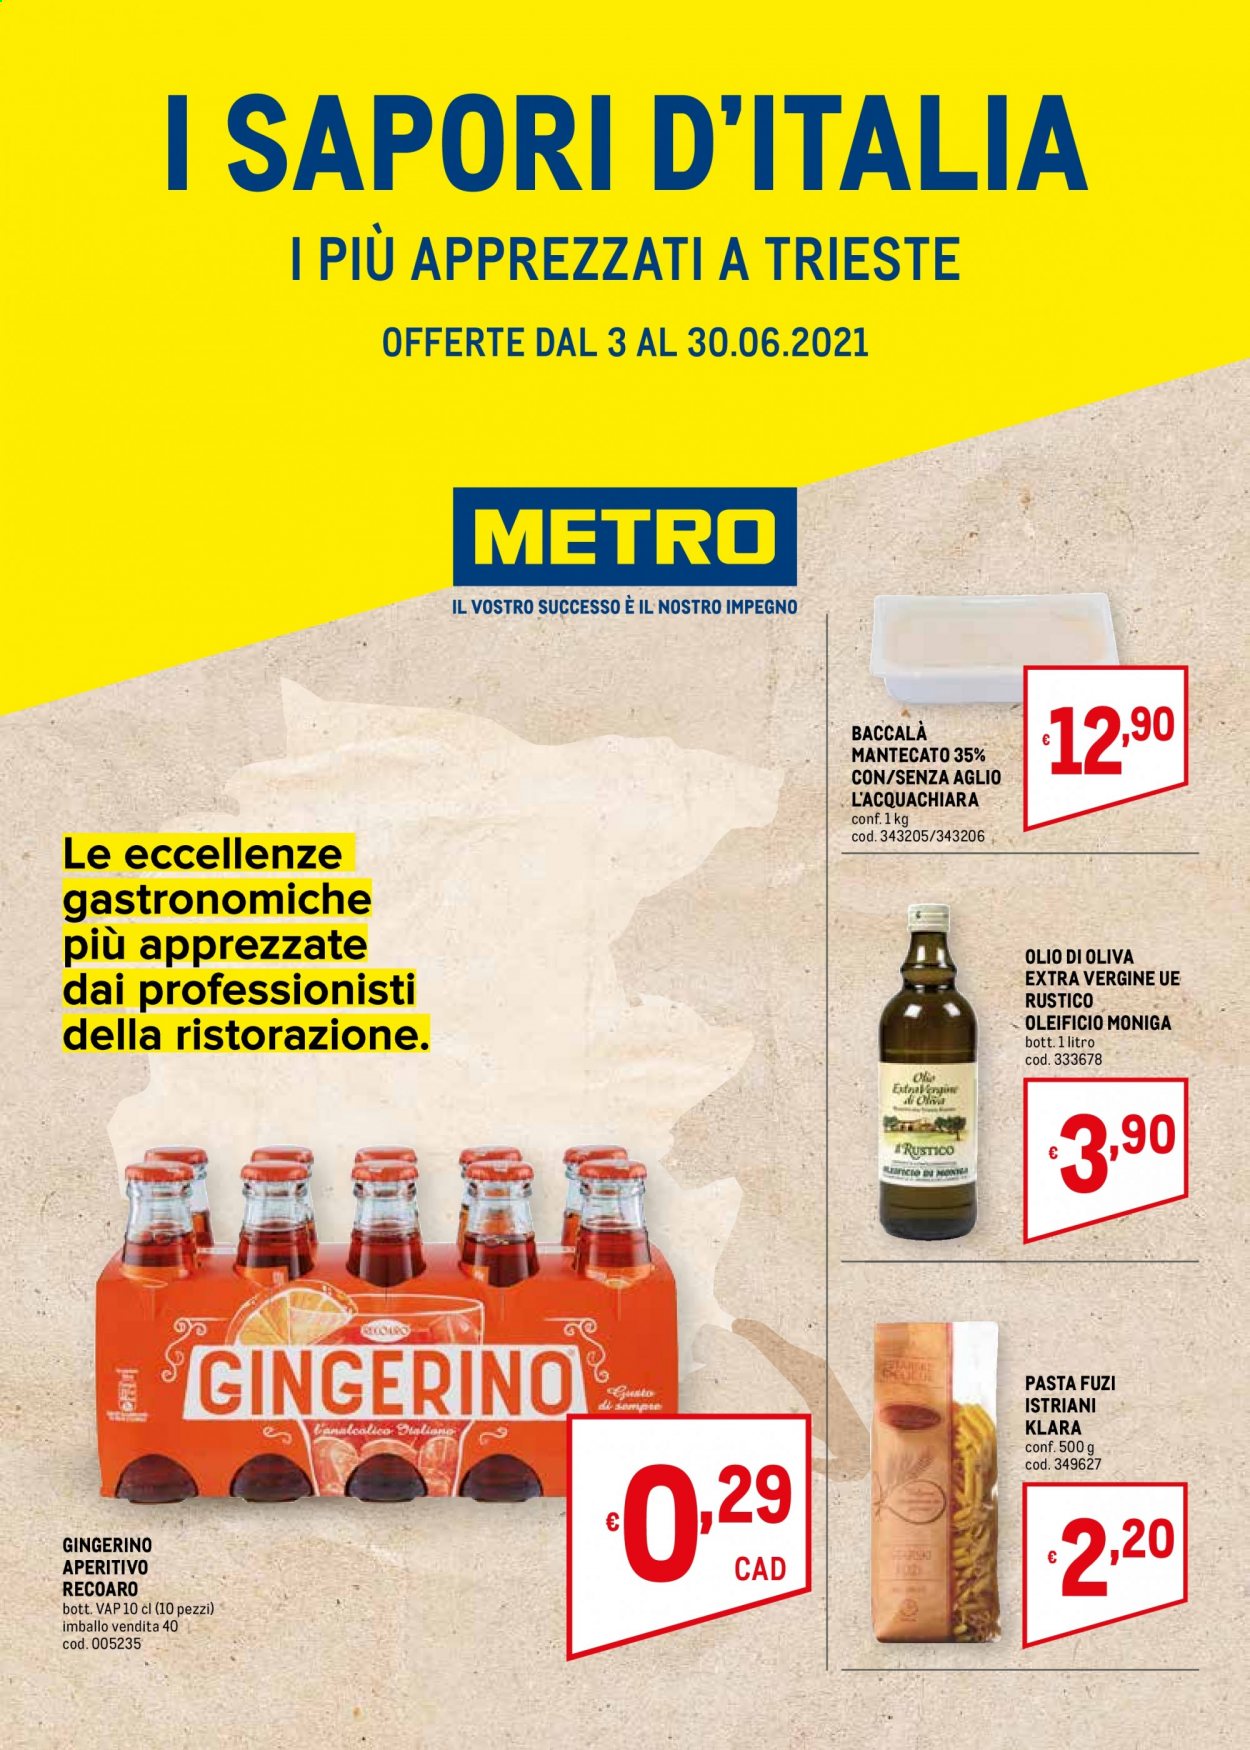 thumbnail - Volantino Metro - 3/6/2021 - 30/6/2021 - Prodotti in offerta - baccalà, baccalà mantecato, pasta, olio, olio di oliva, aperitivo. Pagina 1.